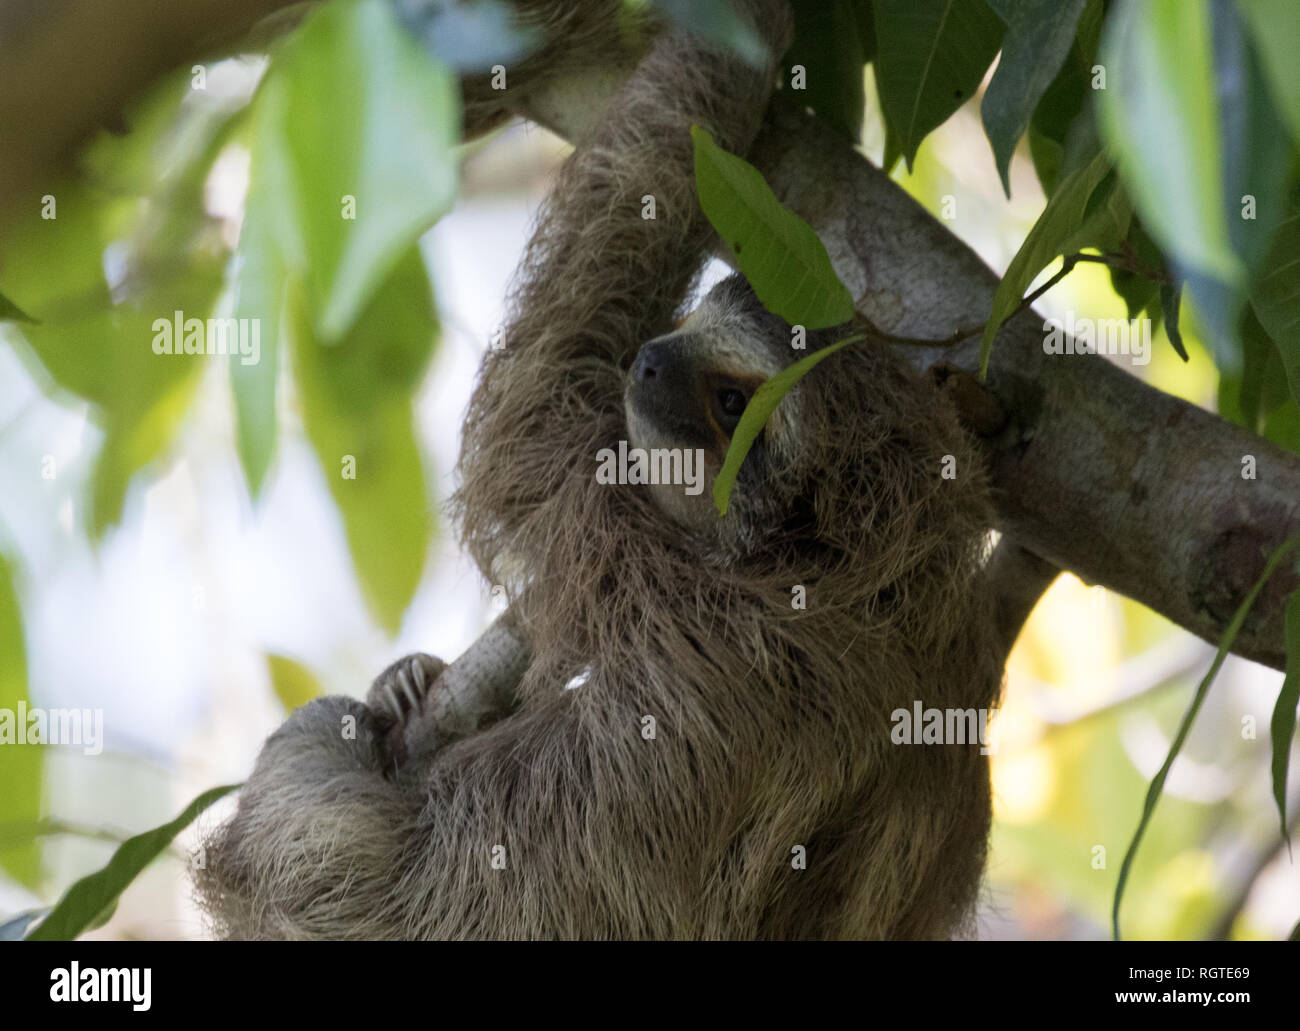 Three-Toed Sloth (Bradypus variegatus) Stock Photo